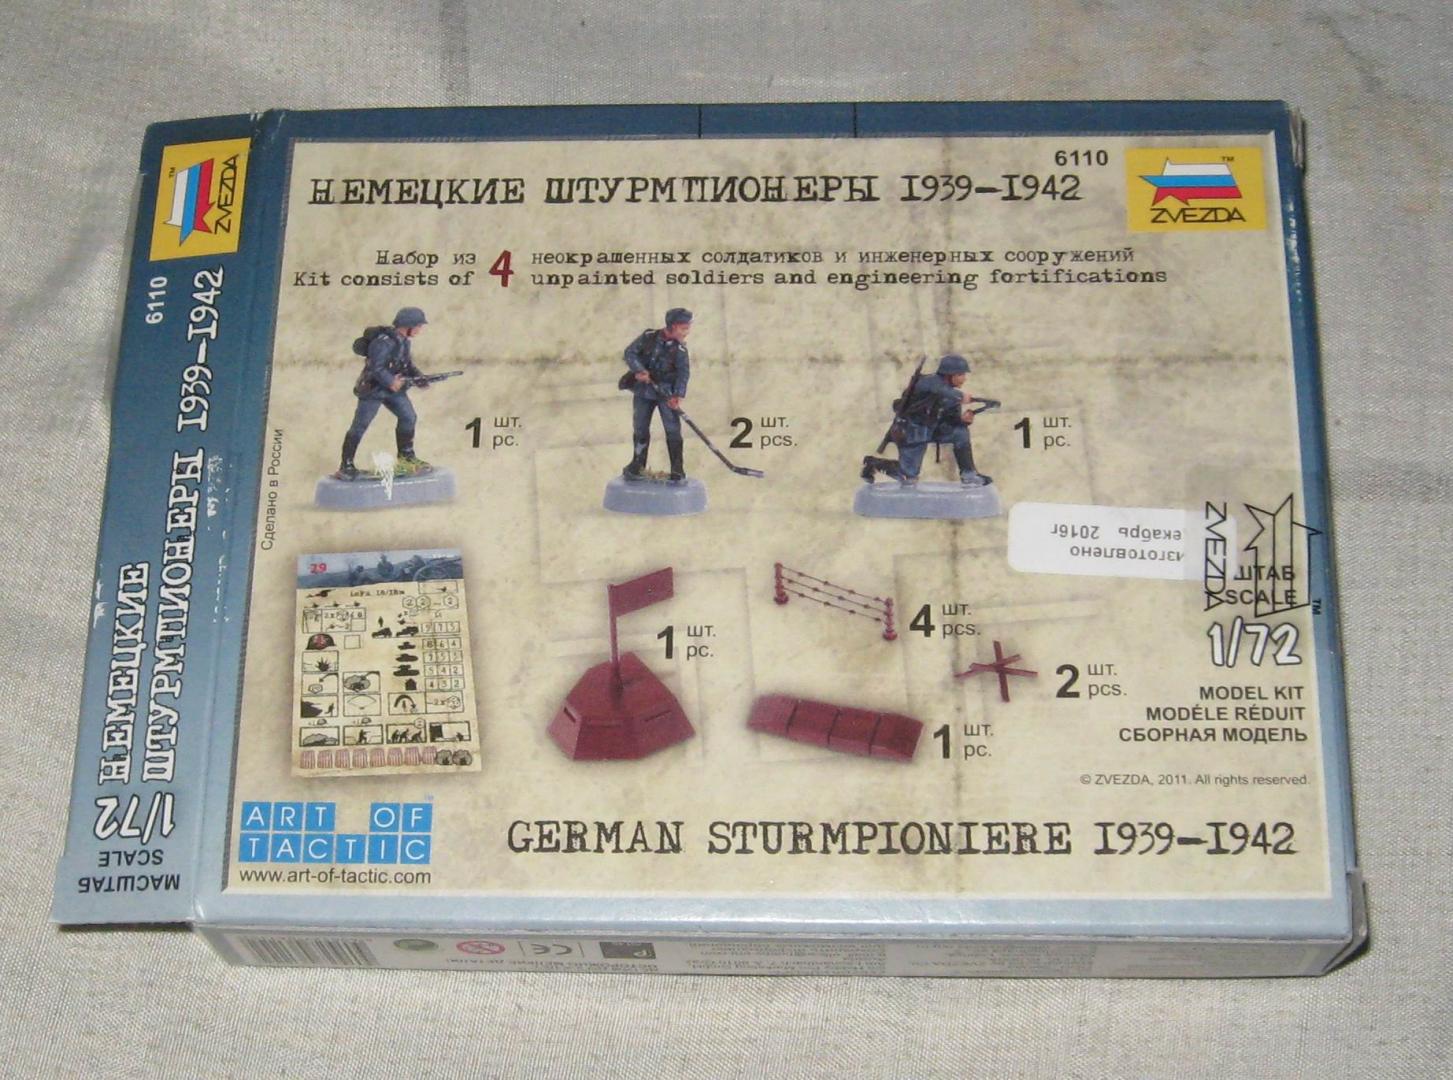 Иллюстрация 2 из 13 для Немецкие штурмпионеры (6110) | Лабиринт - игрушки. Источник: Лабиринт